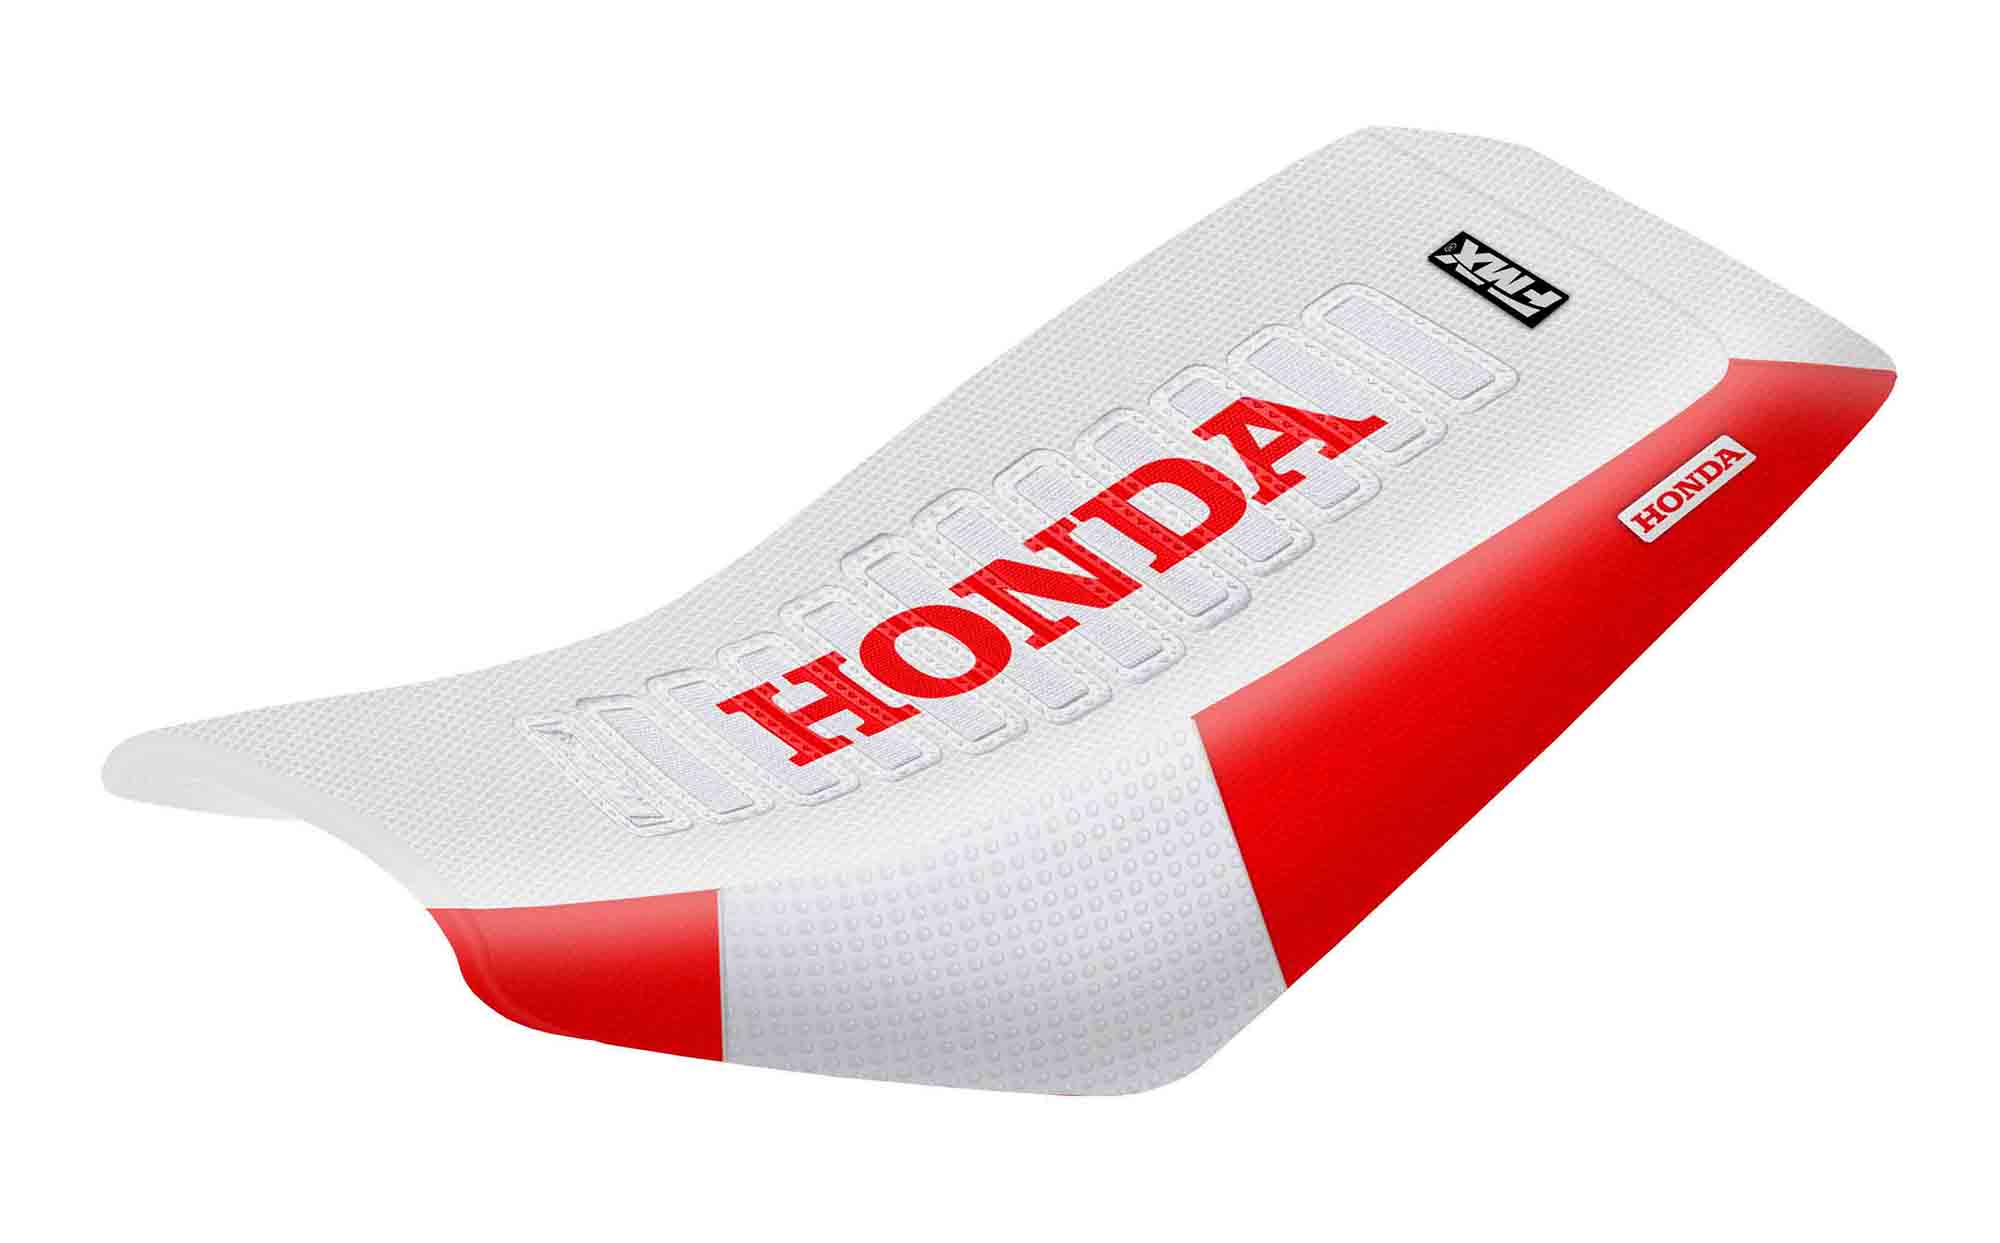 Funda Asiento Honda Trx 400 - 99/07 Ultra Grip Series. Es una obra de arte artesanal fabricada en Argentina, nuestros productos son de la mejor calidad.